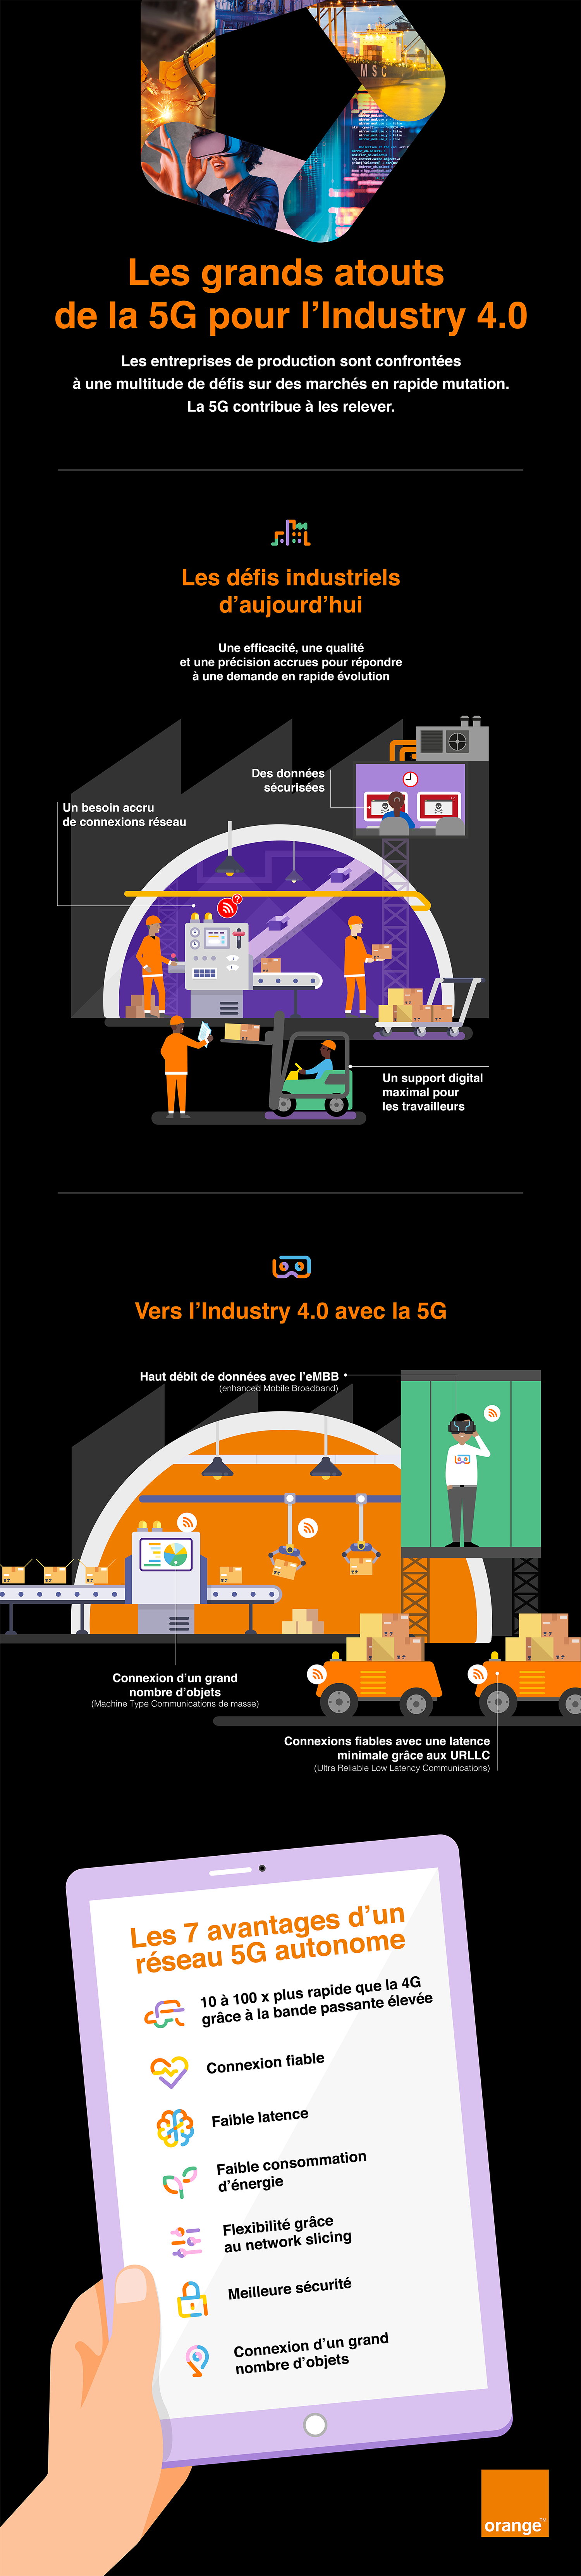 Orange 5G infografiek_FR_V01_small.png